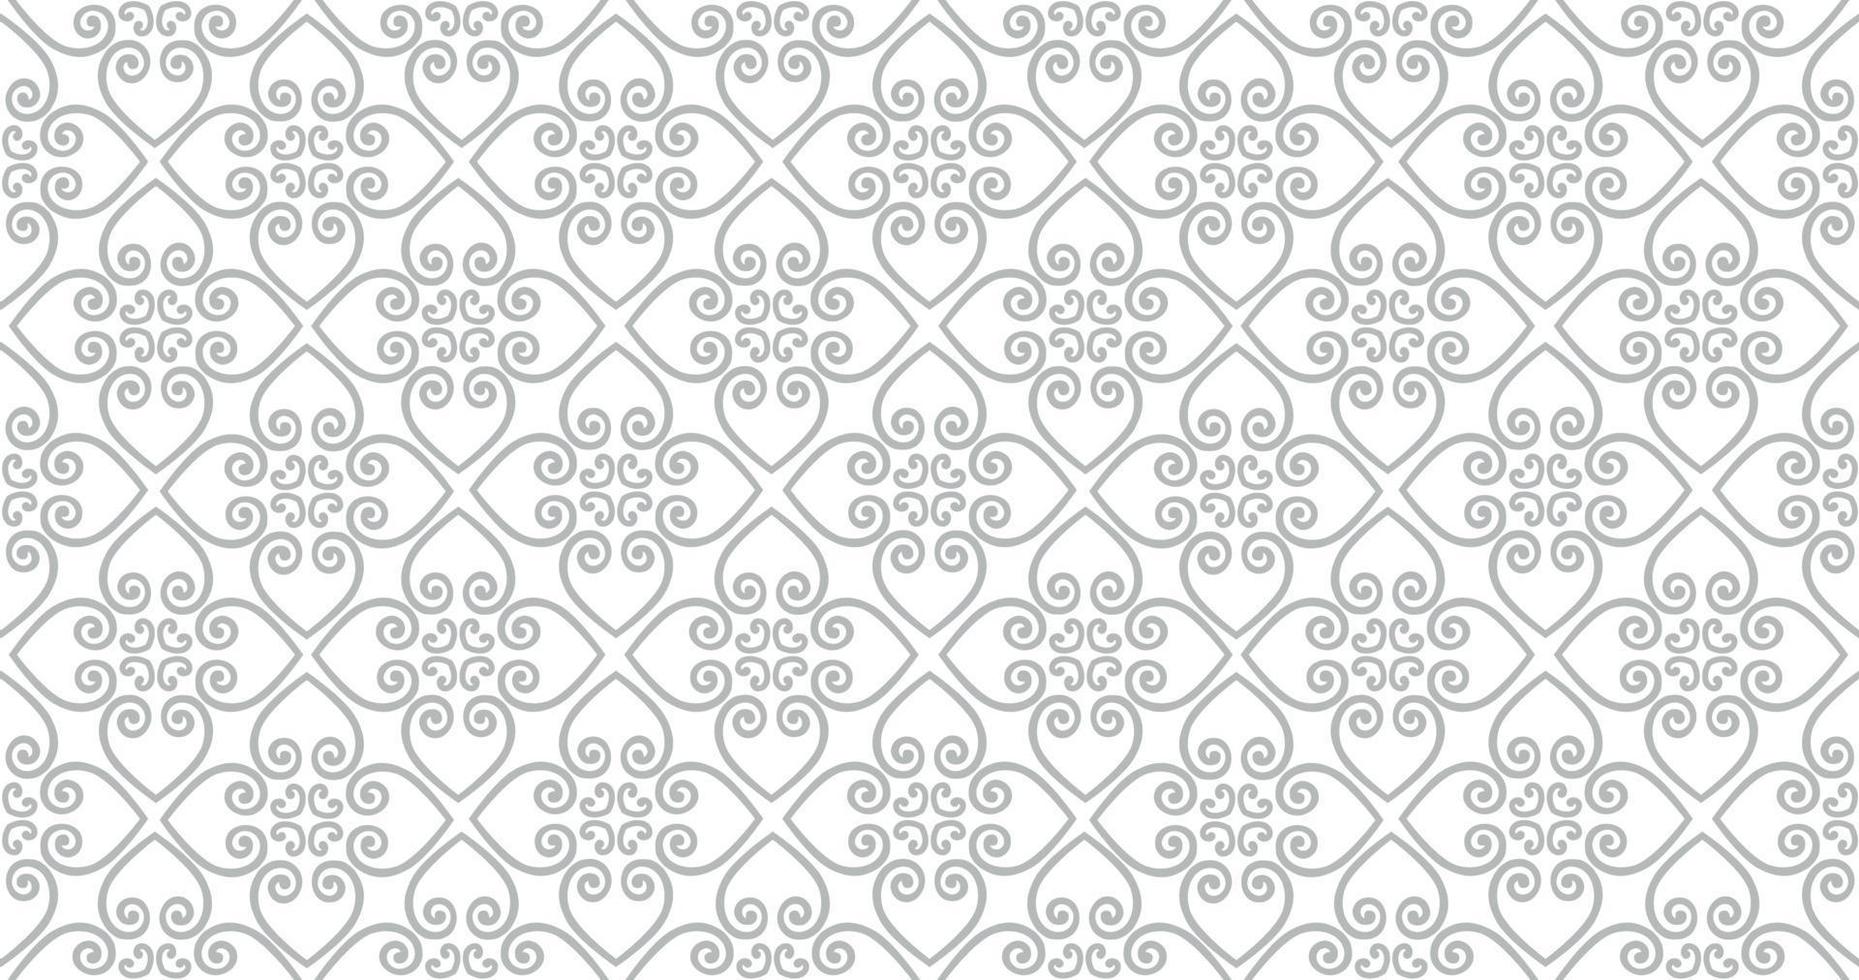 padrão sem emenda abstrato. ornamento de linha árabe com formas geométricas. textura ornamental floral linear. cenário artístico em estilo têxtil do Oriente árabe. vetor